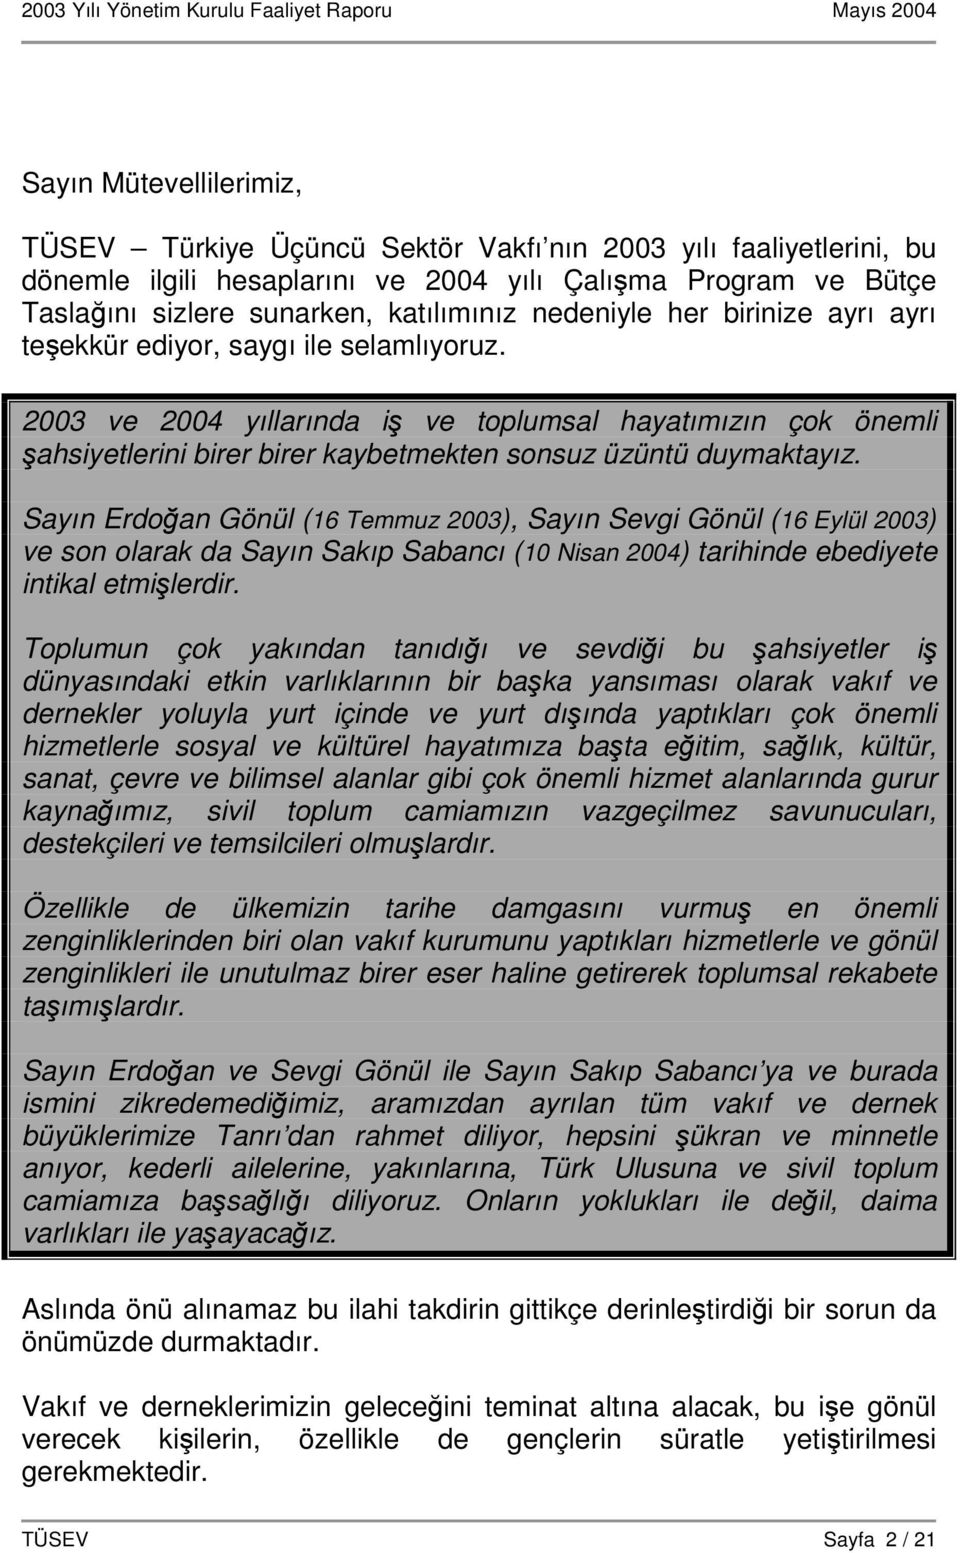 Sayın Erdoan Gönül (16 Temmuz 2003), Sayın Sevgi Gönül (16 Eylül 2003) ve son olarak da Sayın Sakıp Sabancı (10 Nisan 2004) tarihinde ebediyete intikal etmilerdir.